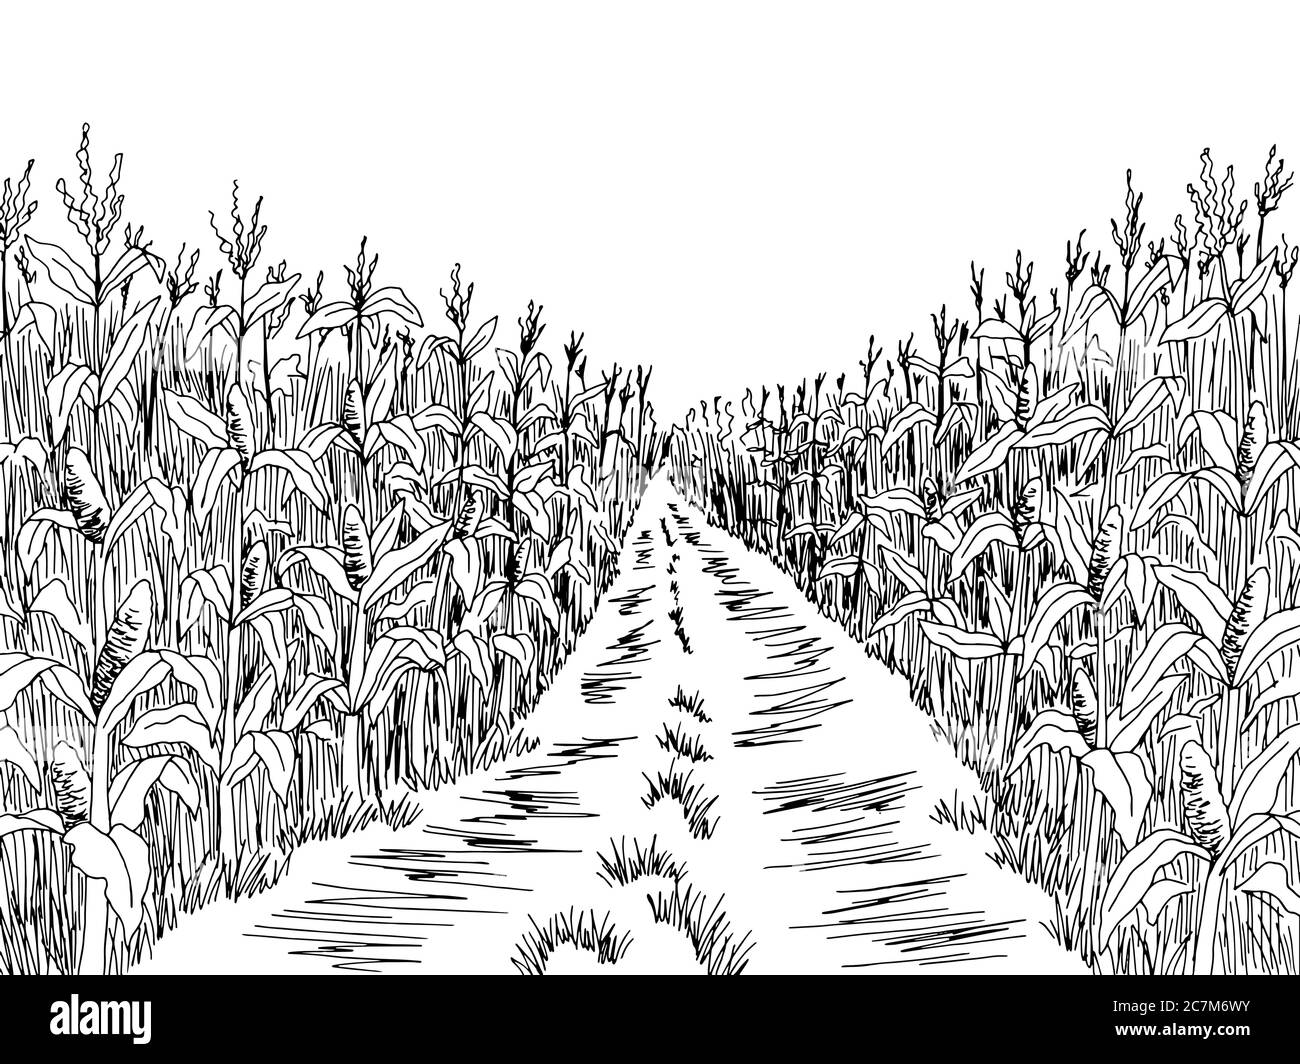 Image de route de champ de maïs noir blanc paysage dessin vecteur d'illustration Illustration de Vecteur